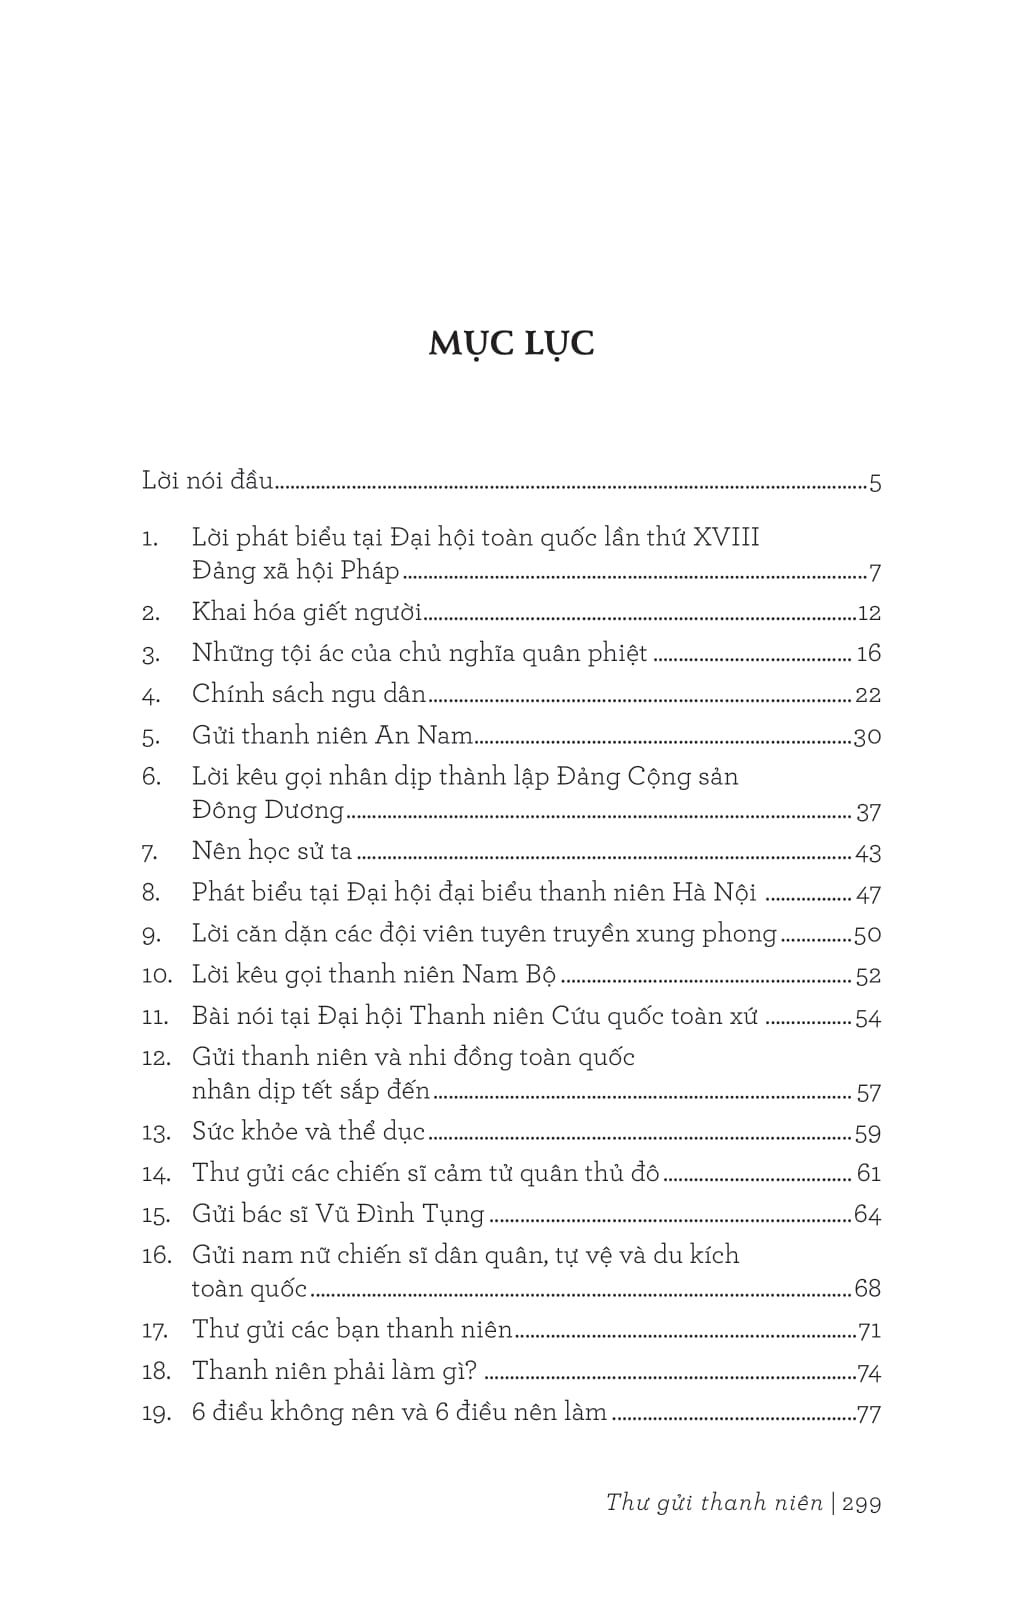 Di Sản Hồ Chí Minh - Thư Gửi Thanh Niên PDF